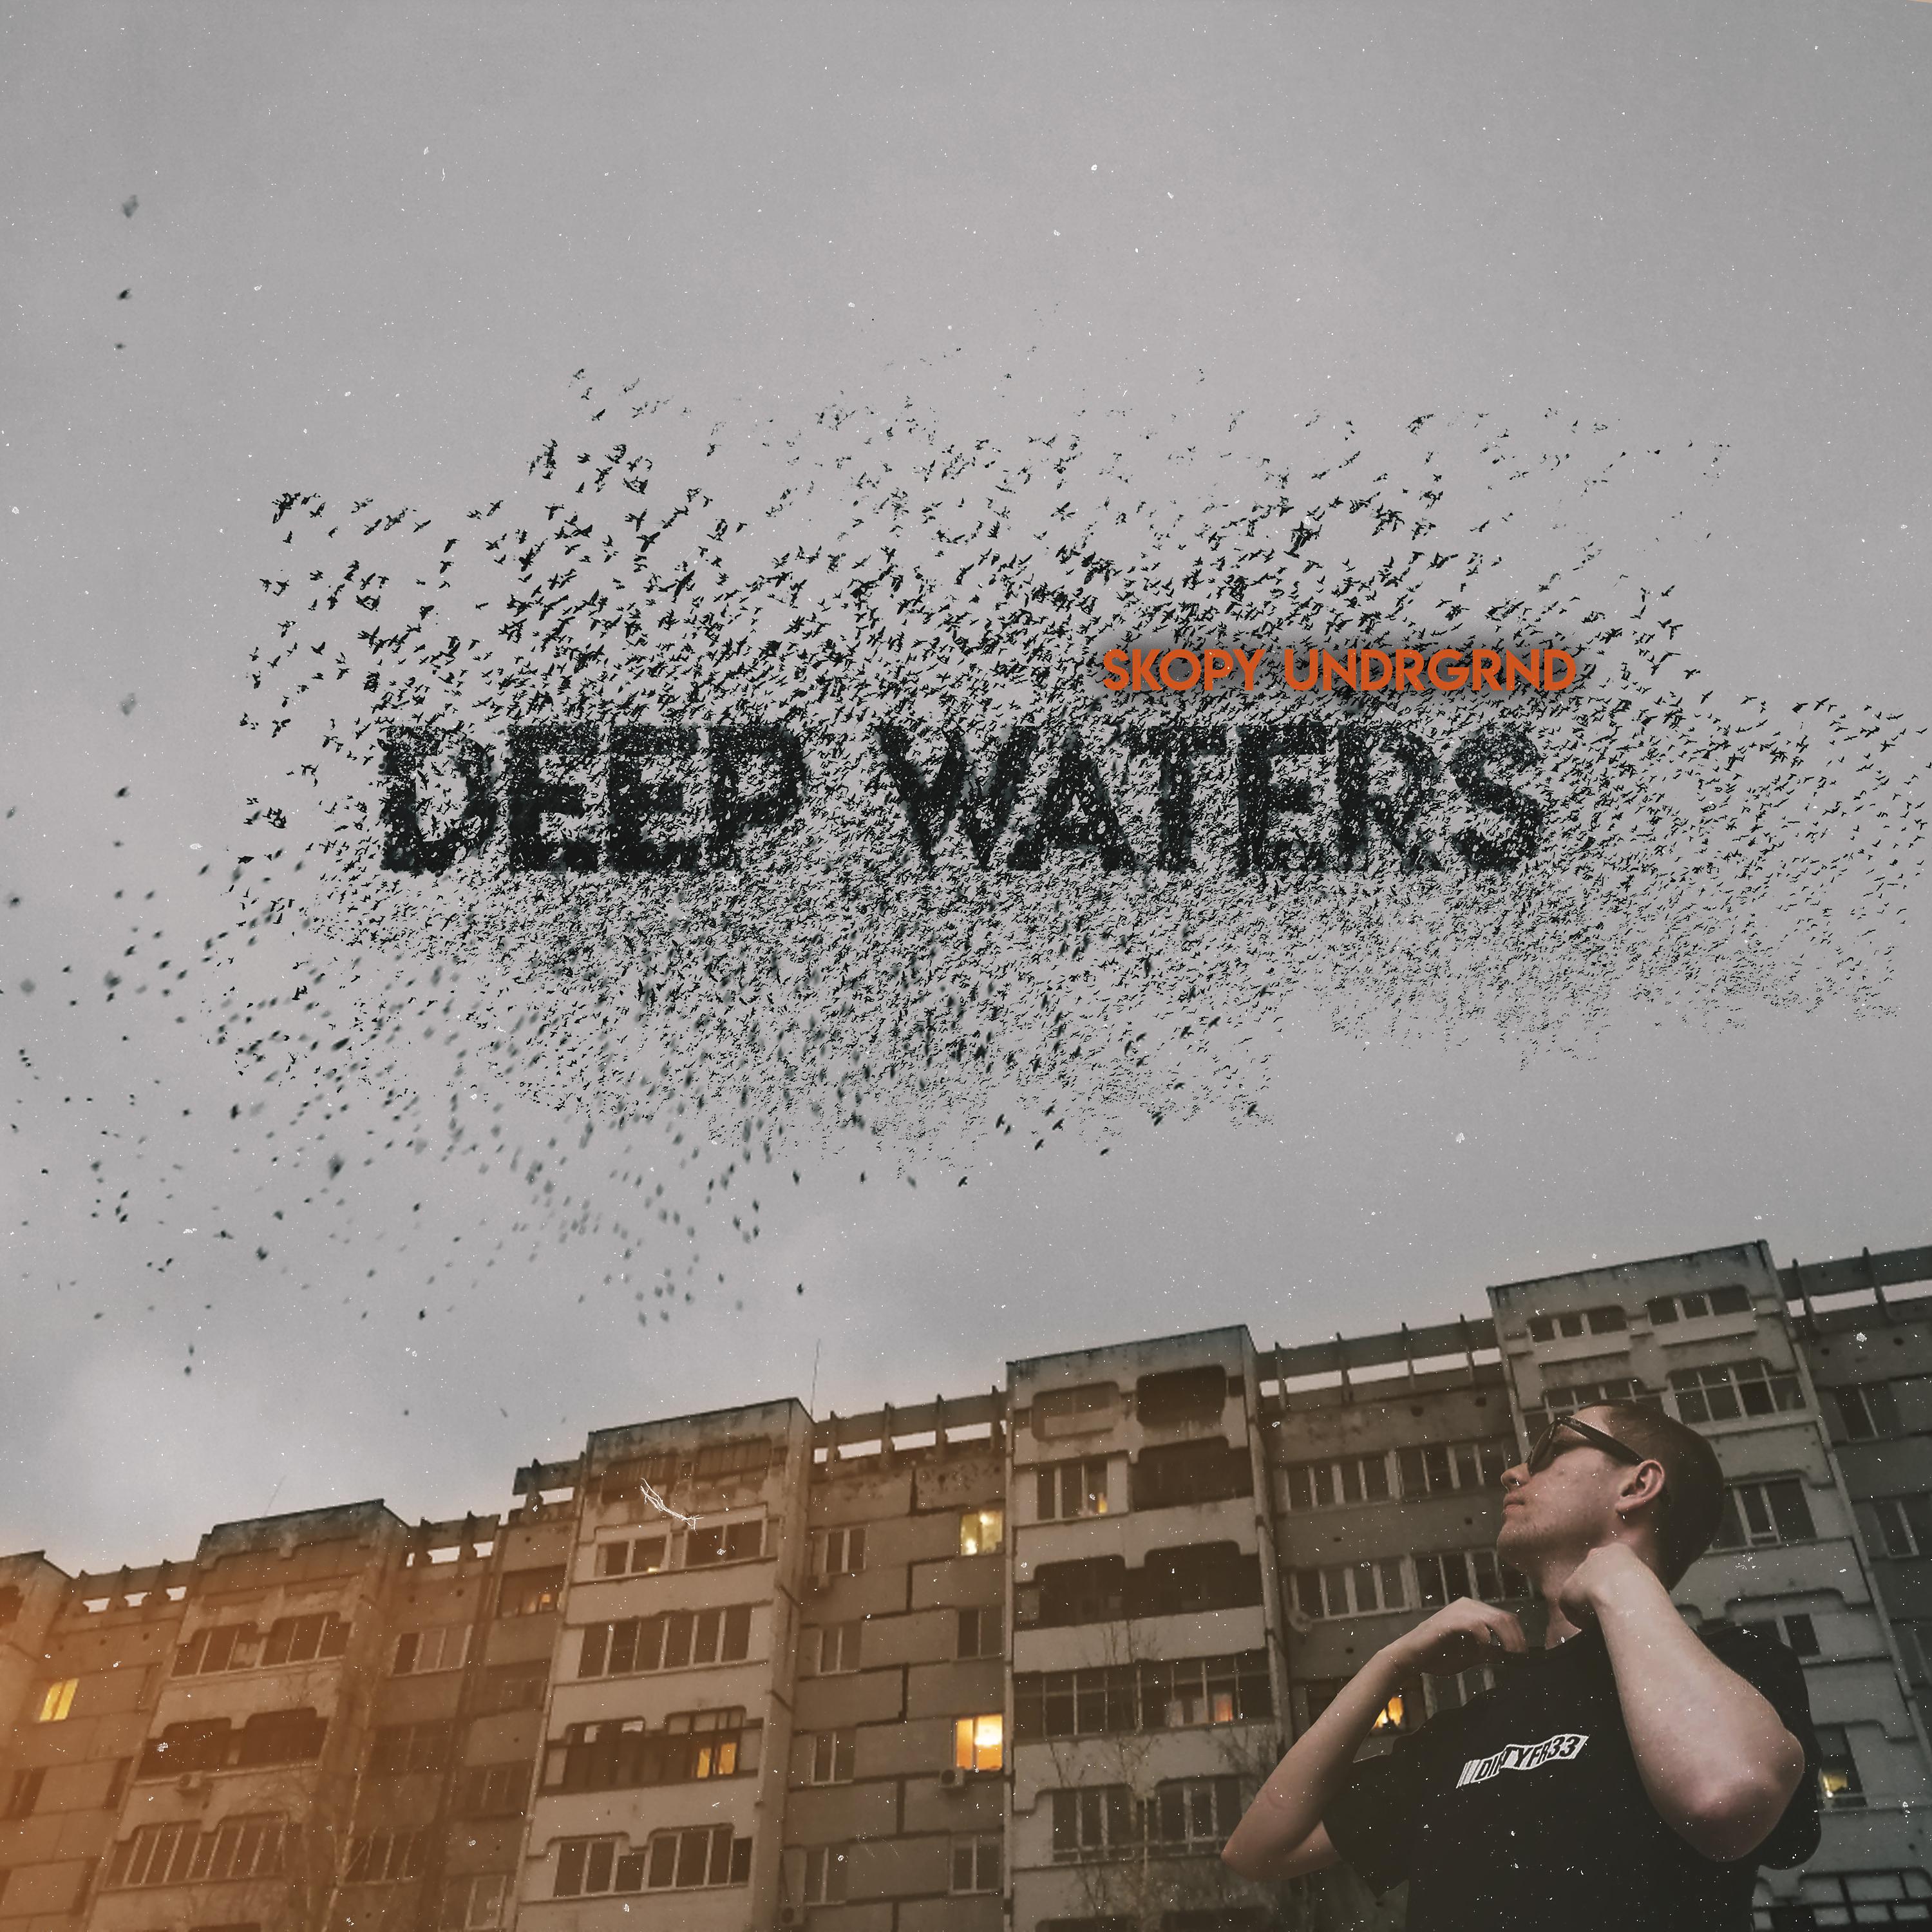 Постер альбома Deep Waters